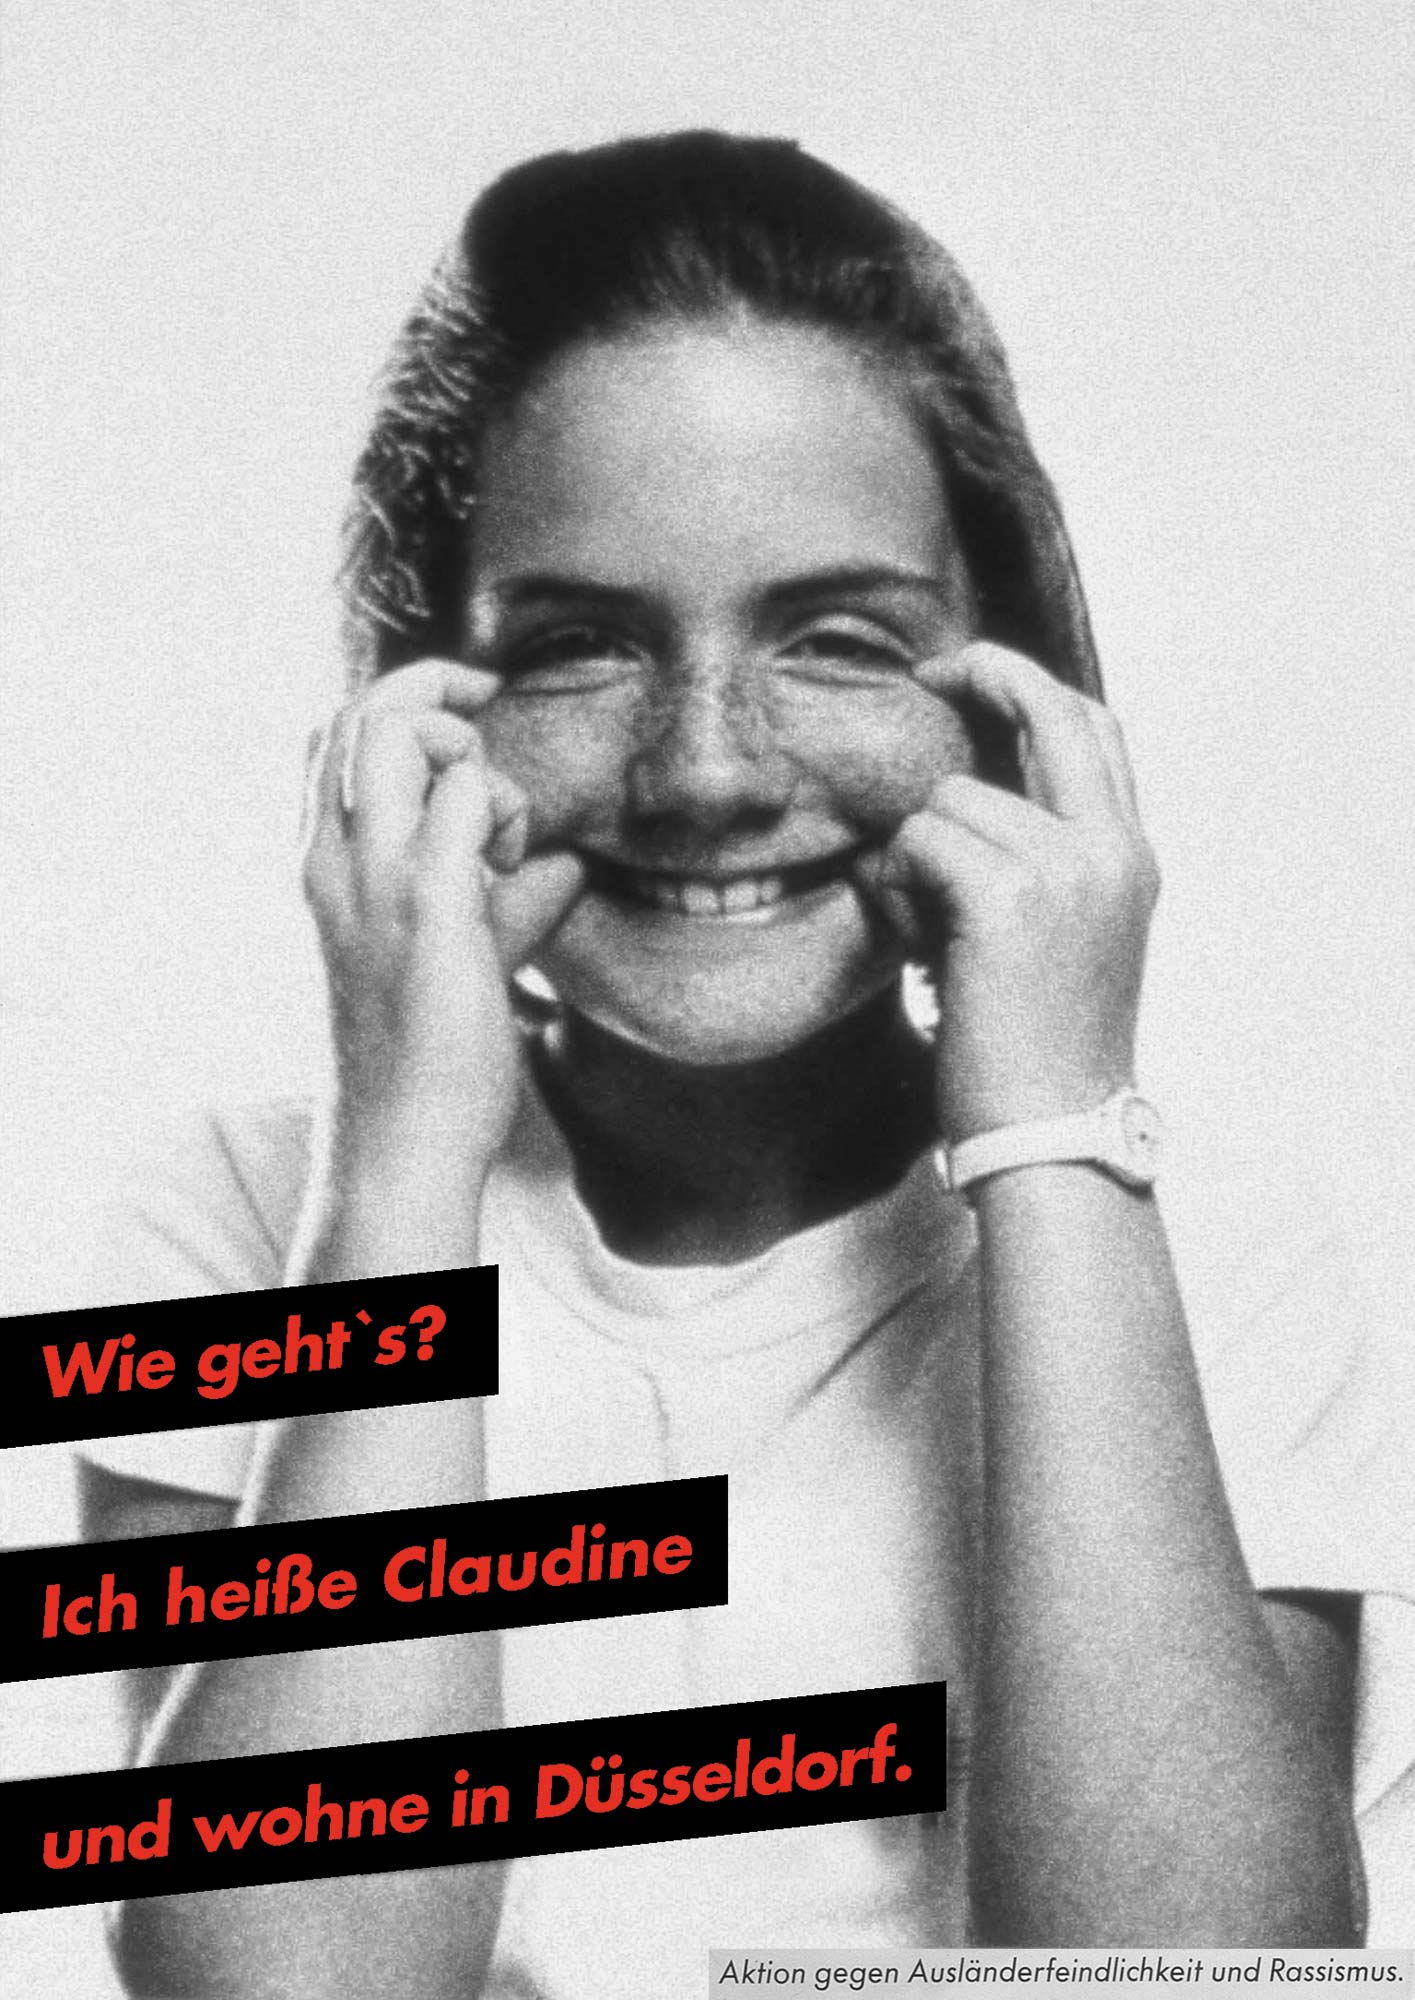 Gestaltet: Eva Cervinka, Udo Bechmann, Betreut: Uwe Loesch, Titel: Wie geht's? Ich heiße Claudine und wohne in Düsseldorf., Jahr: 1989